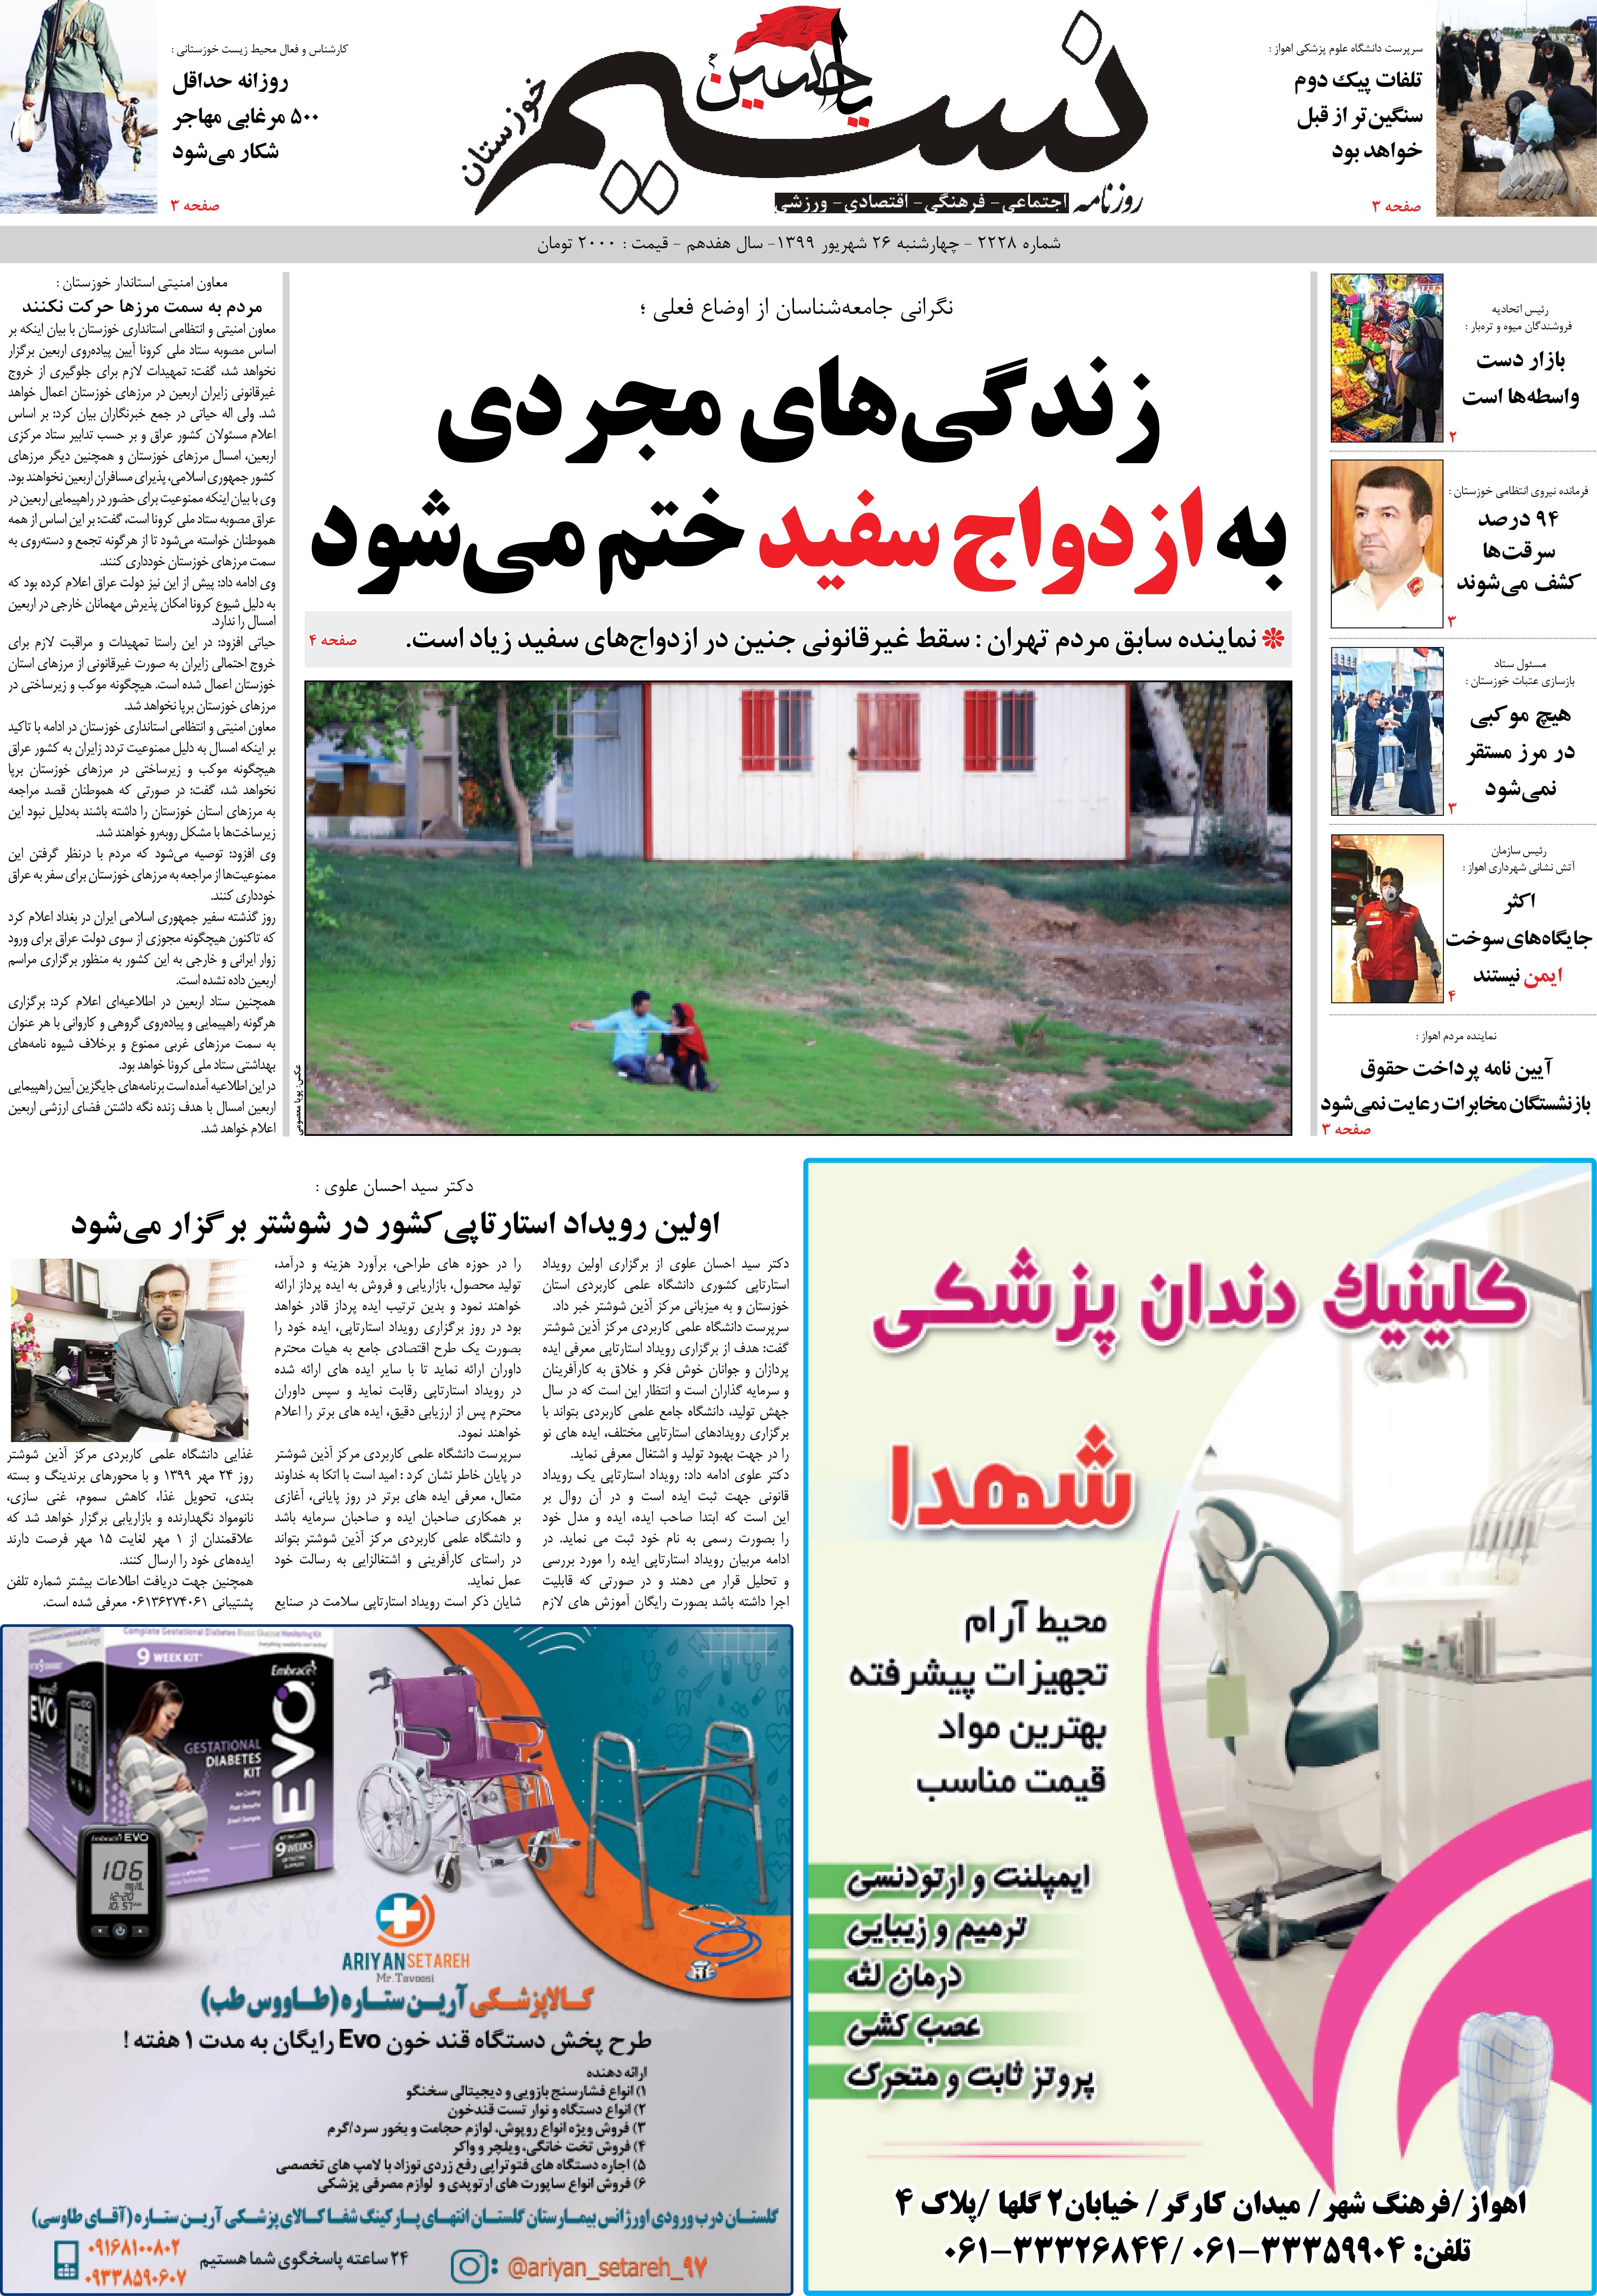 صفحه اصلی روزنامه نسیم شماره 2228 